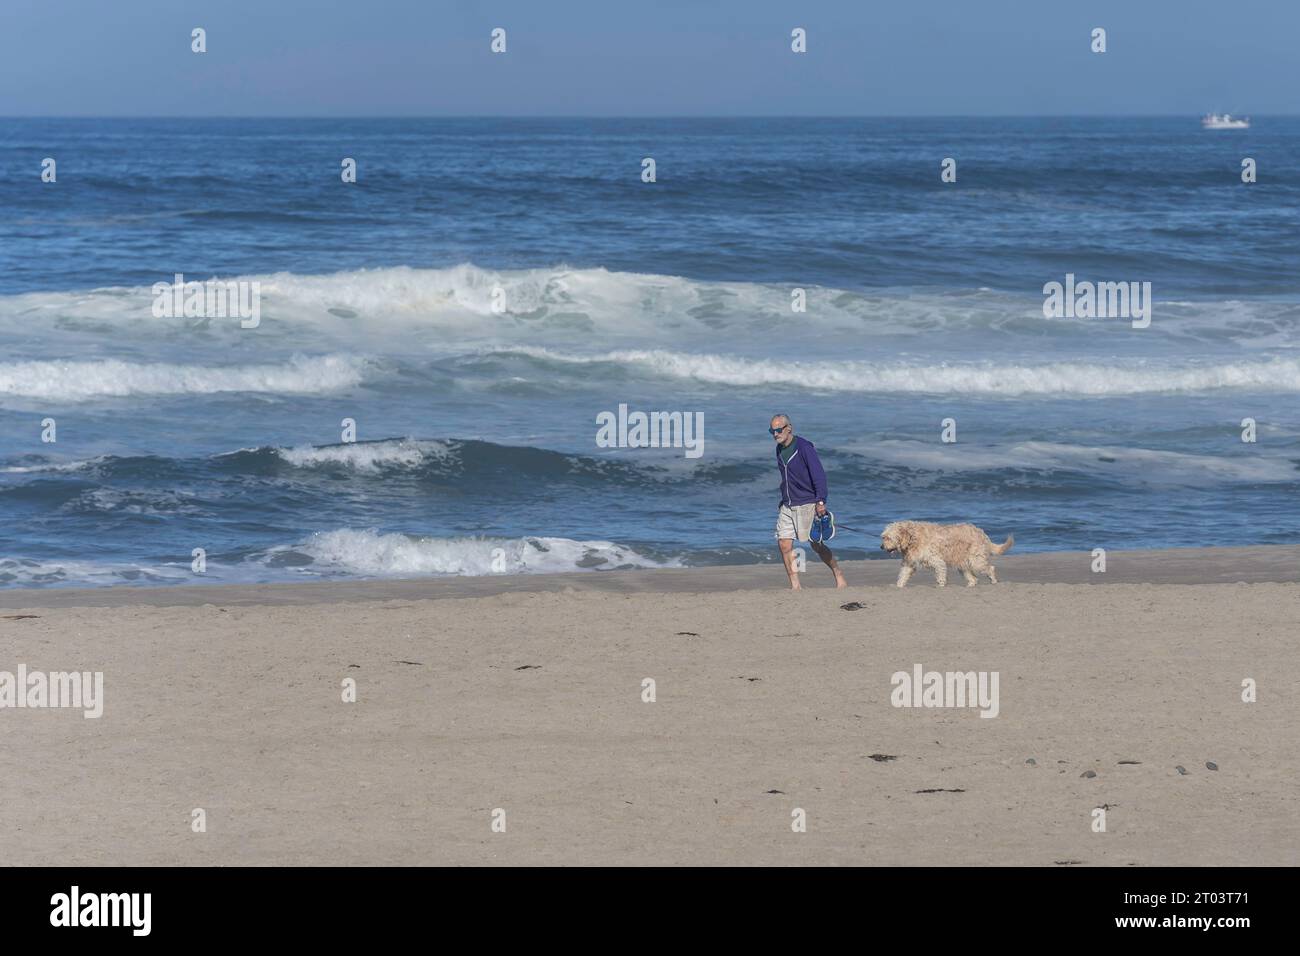 A Man & his best friend walk the beach Stock Photo